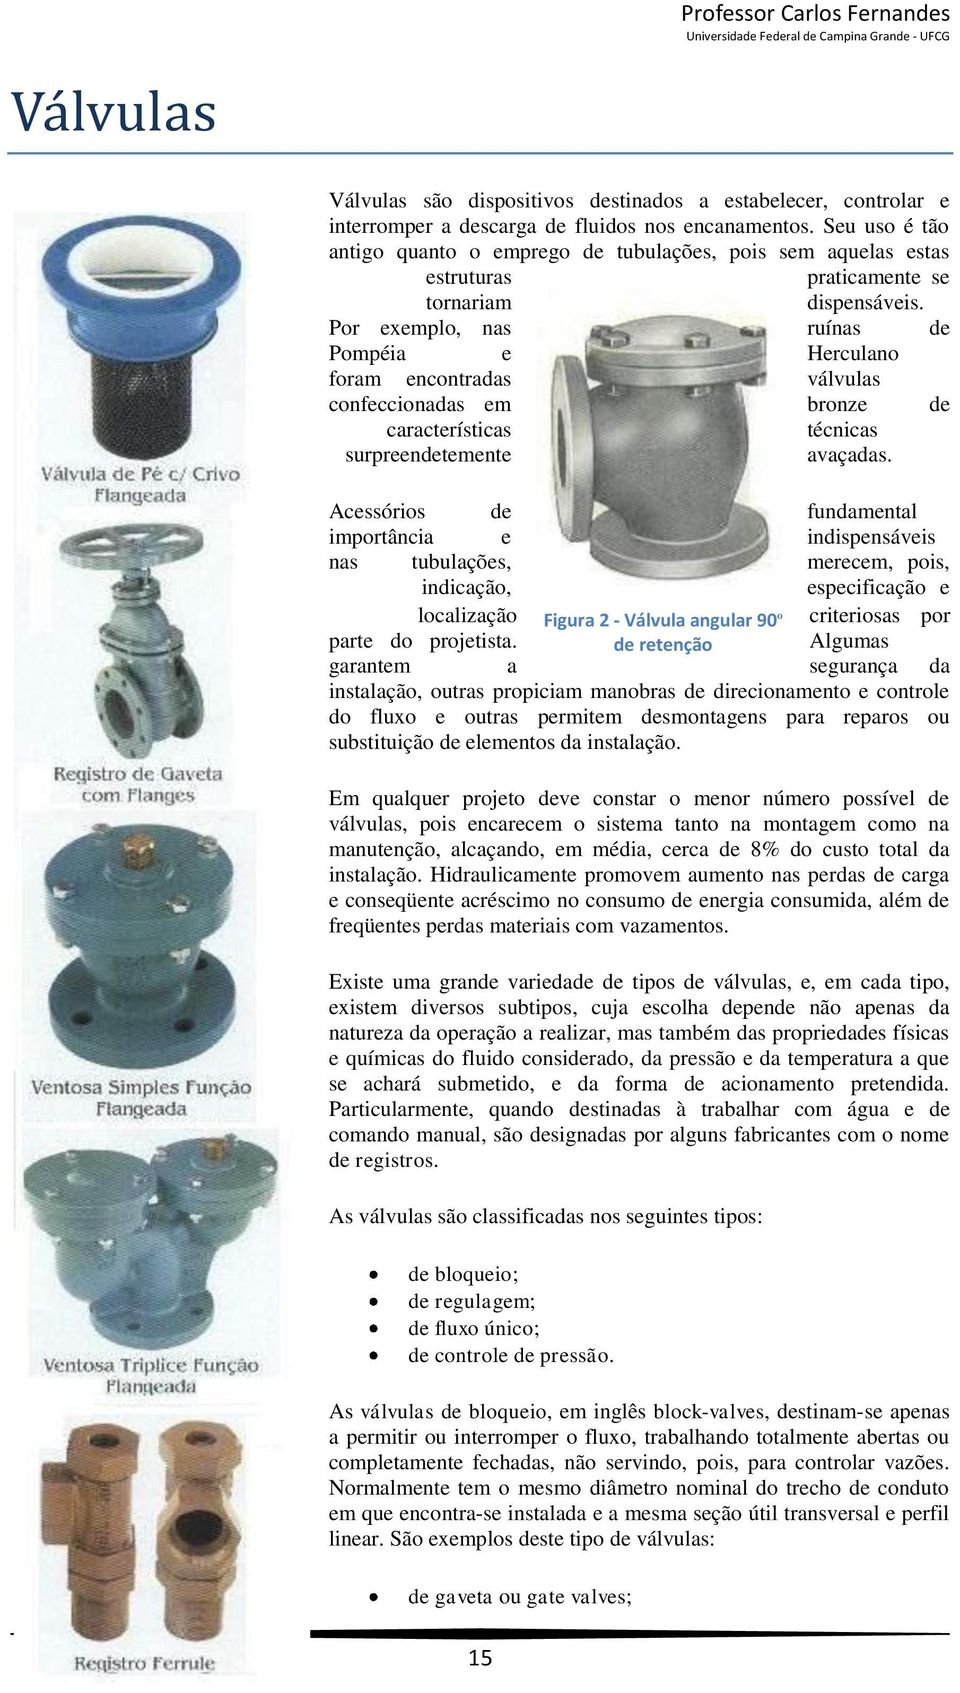 Por exemplo, nas ruínas de Pompéia e Herculano foram encontradas válvulas confeccionadas em bronze de características técnicas surpreendetemente avaçadas.